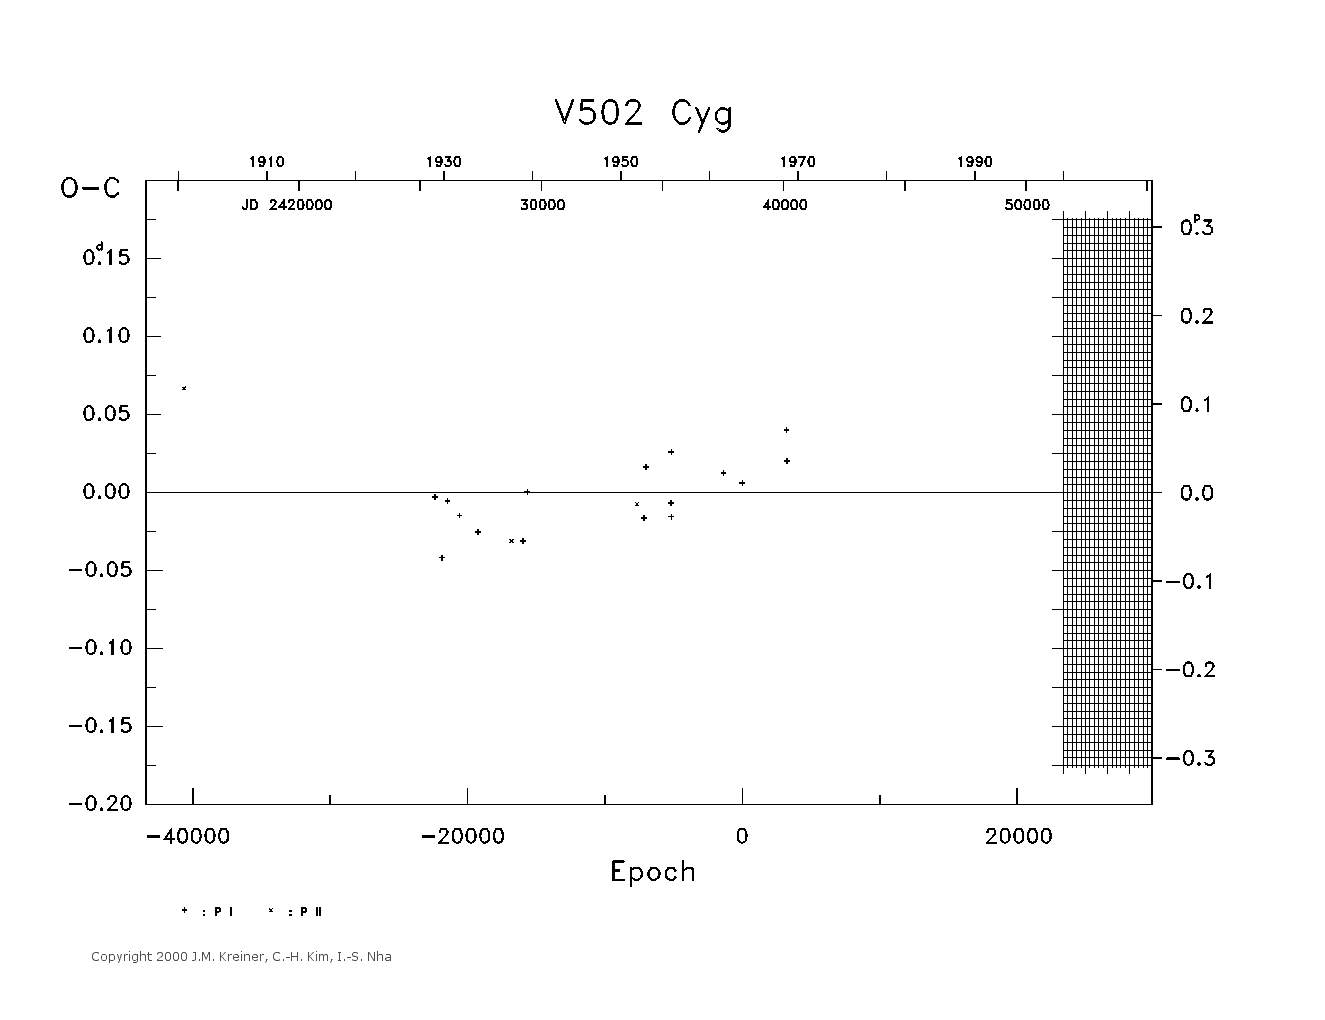 [IMAGE: large V502 CYG O-C diagram]